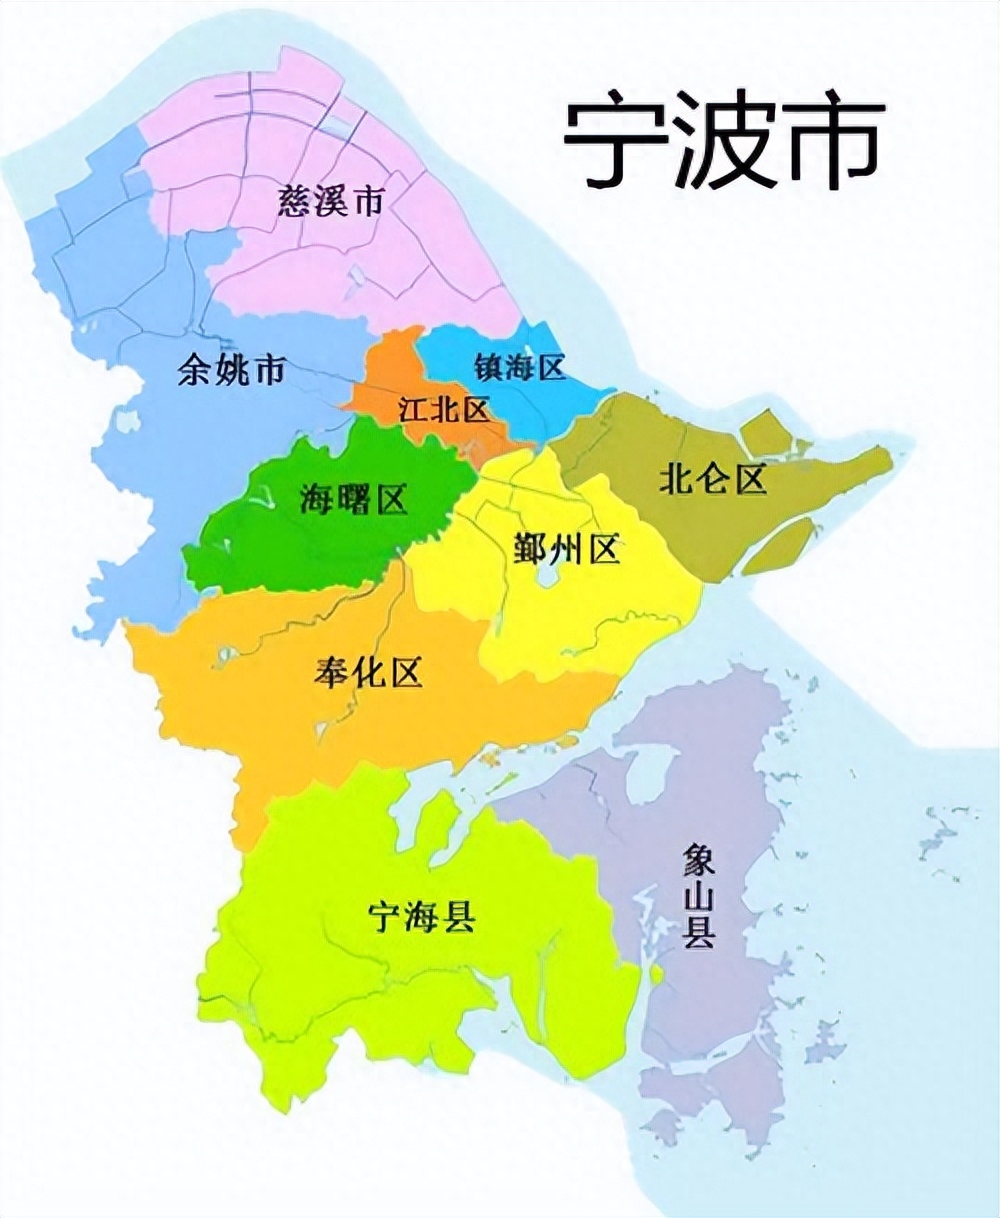 浙江省政府提出一项区划建议，涉及慈溪县和诸暨市的变化